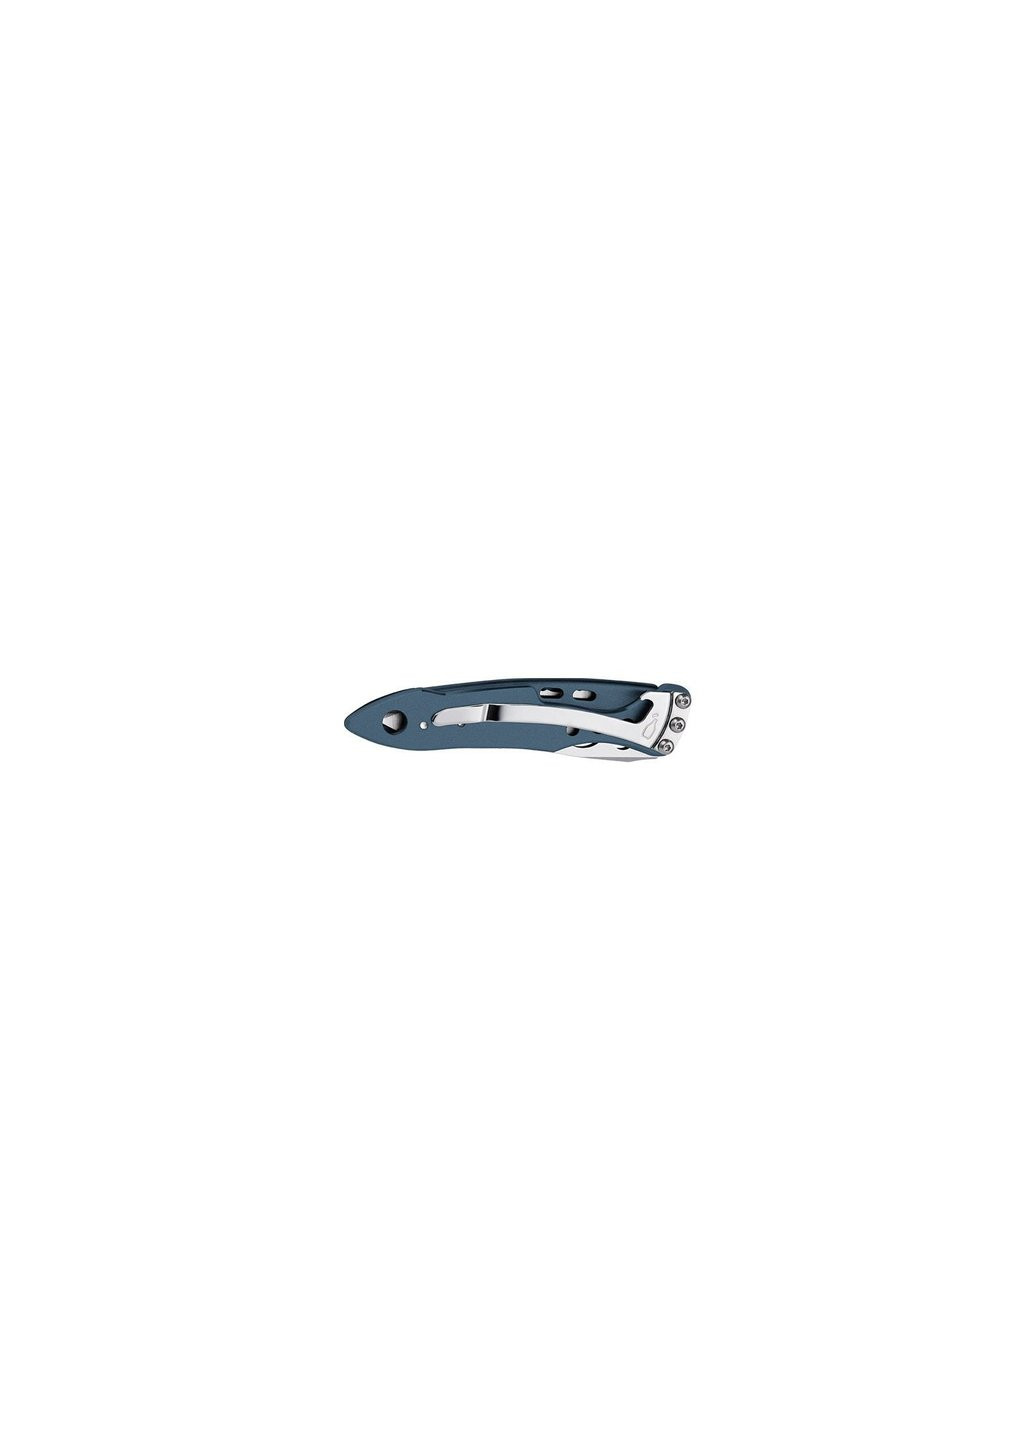 Нож Skeletool KBX-Denim коробка (832383) Leatherman (257257112)